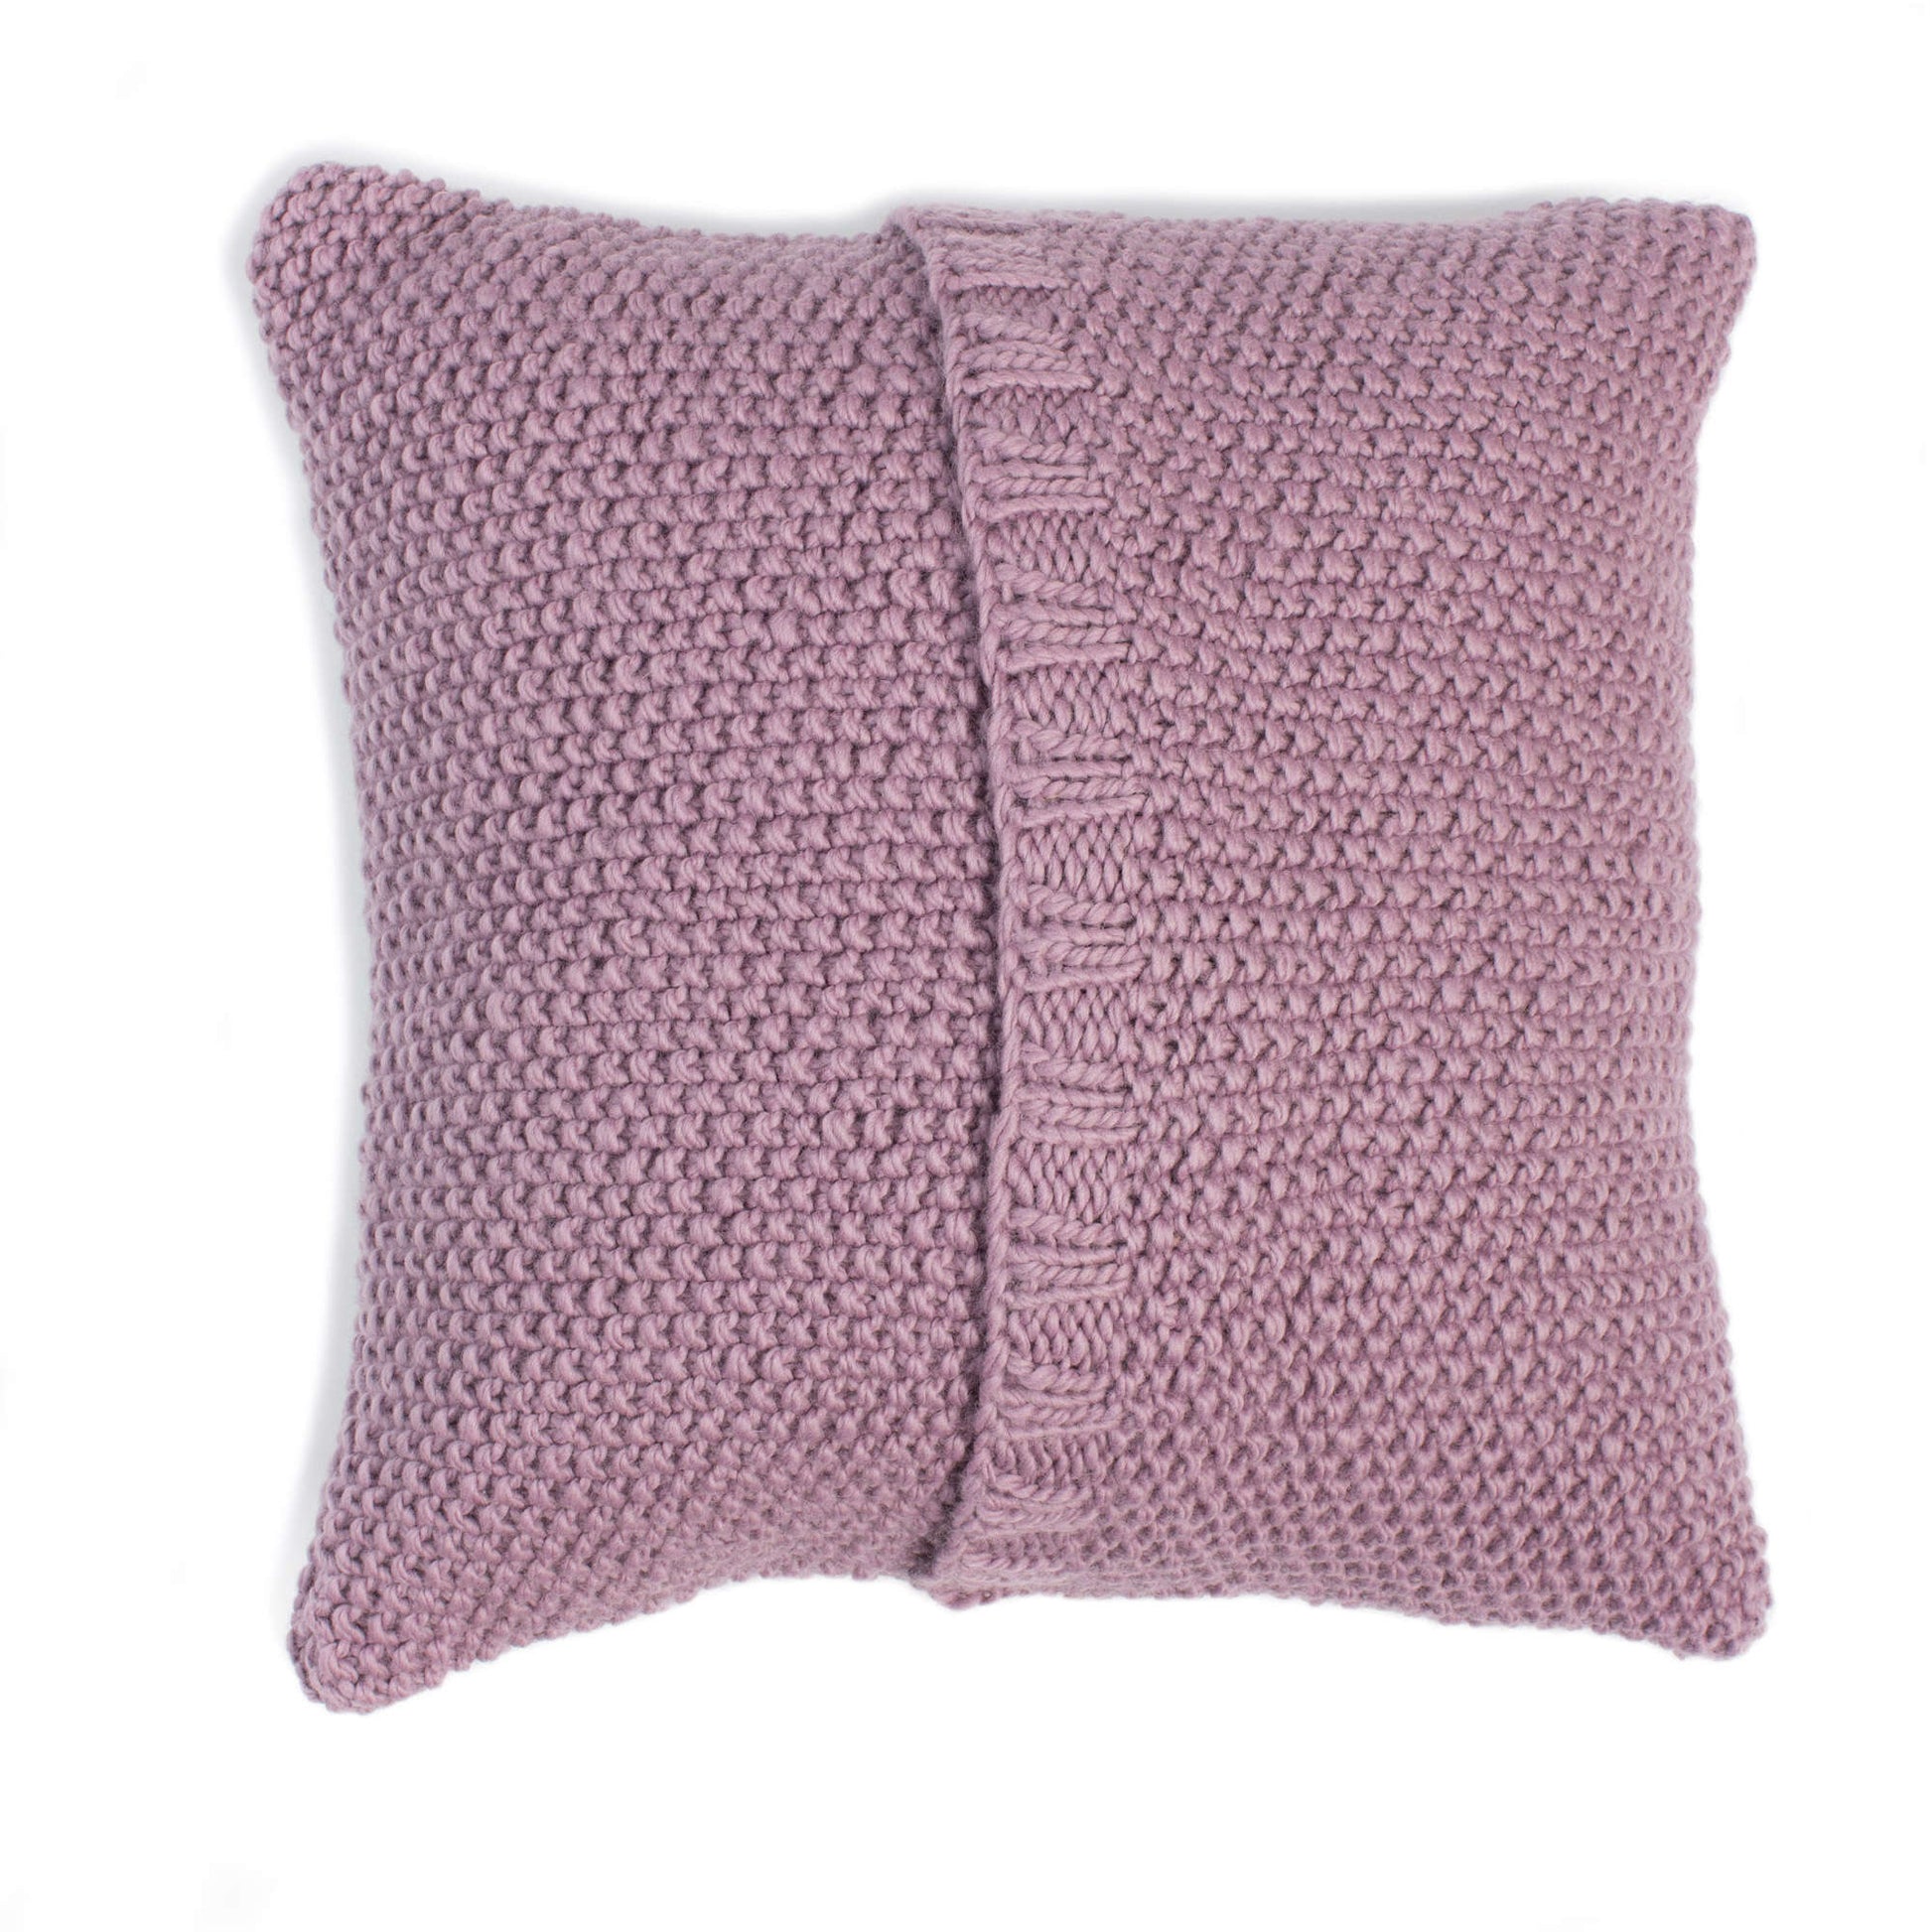 Free Patons Seed Stitch Knit Pillow Pattern